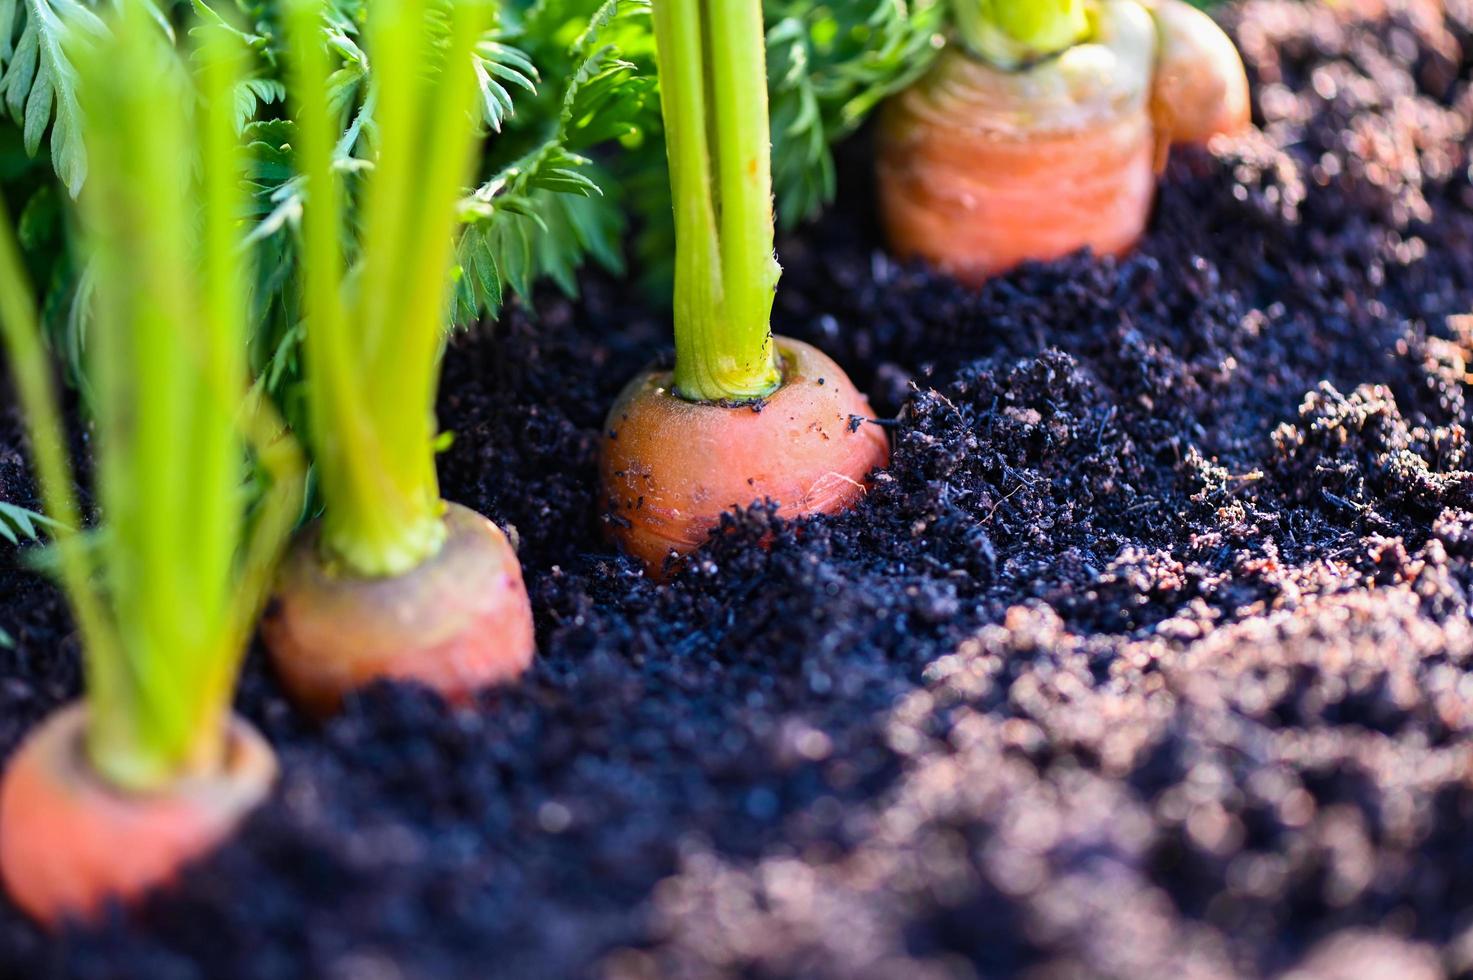 zanahorias que crecen en el suelo granja orgánica zanahoria en el suelo, zanahorias frescas que crecen en el campo de zanahorias vegetales crecen en el jardín cosecha producto agrícola naturaleza foto